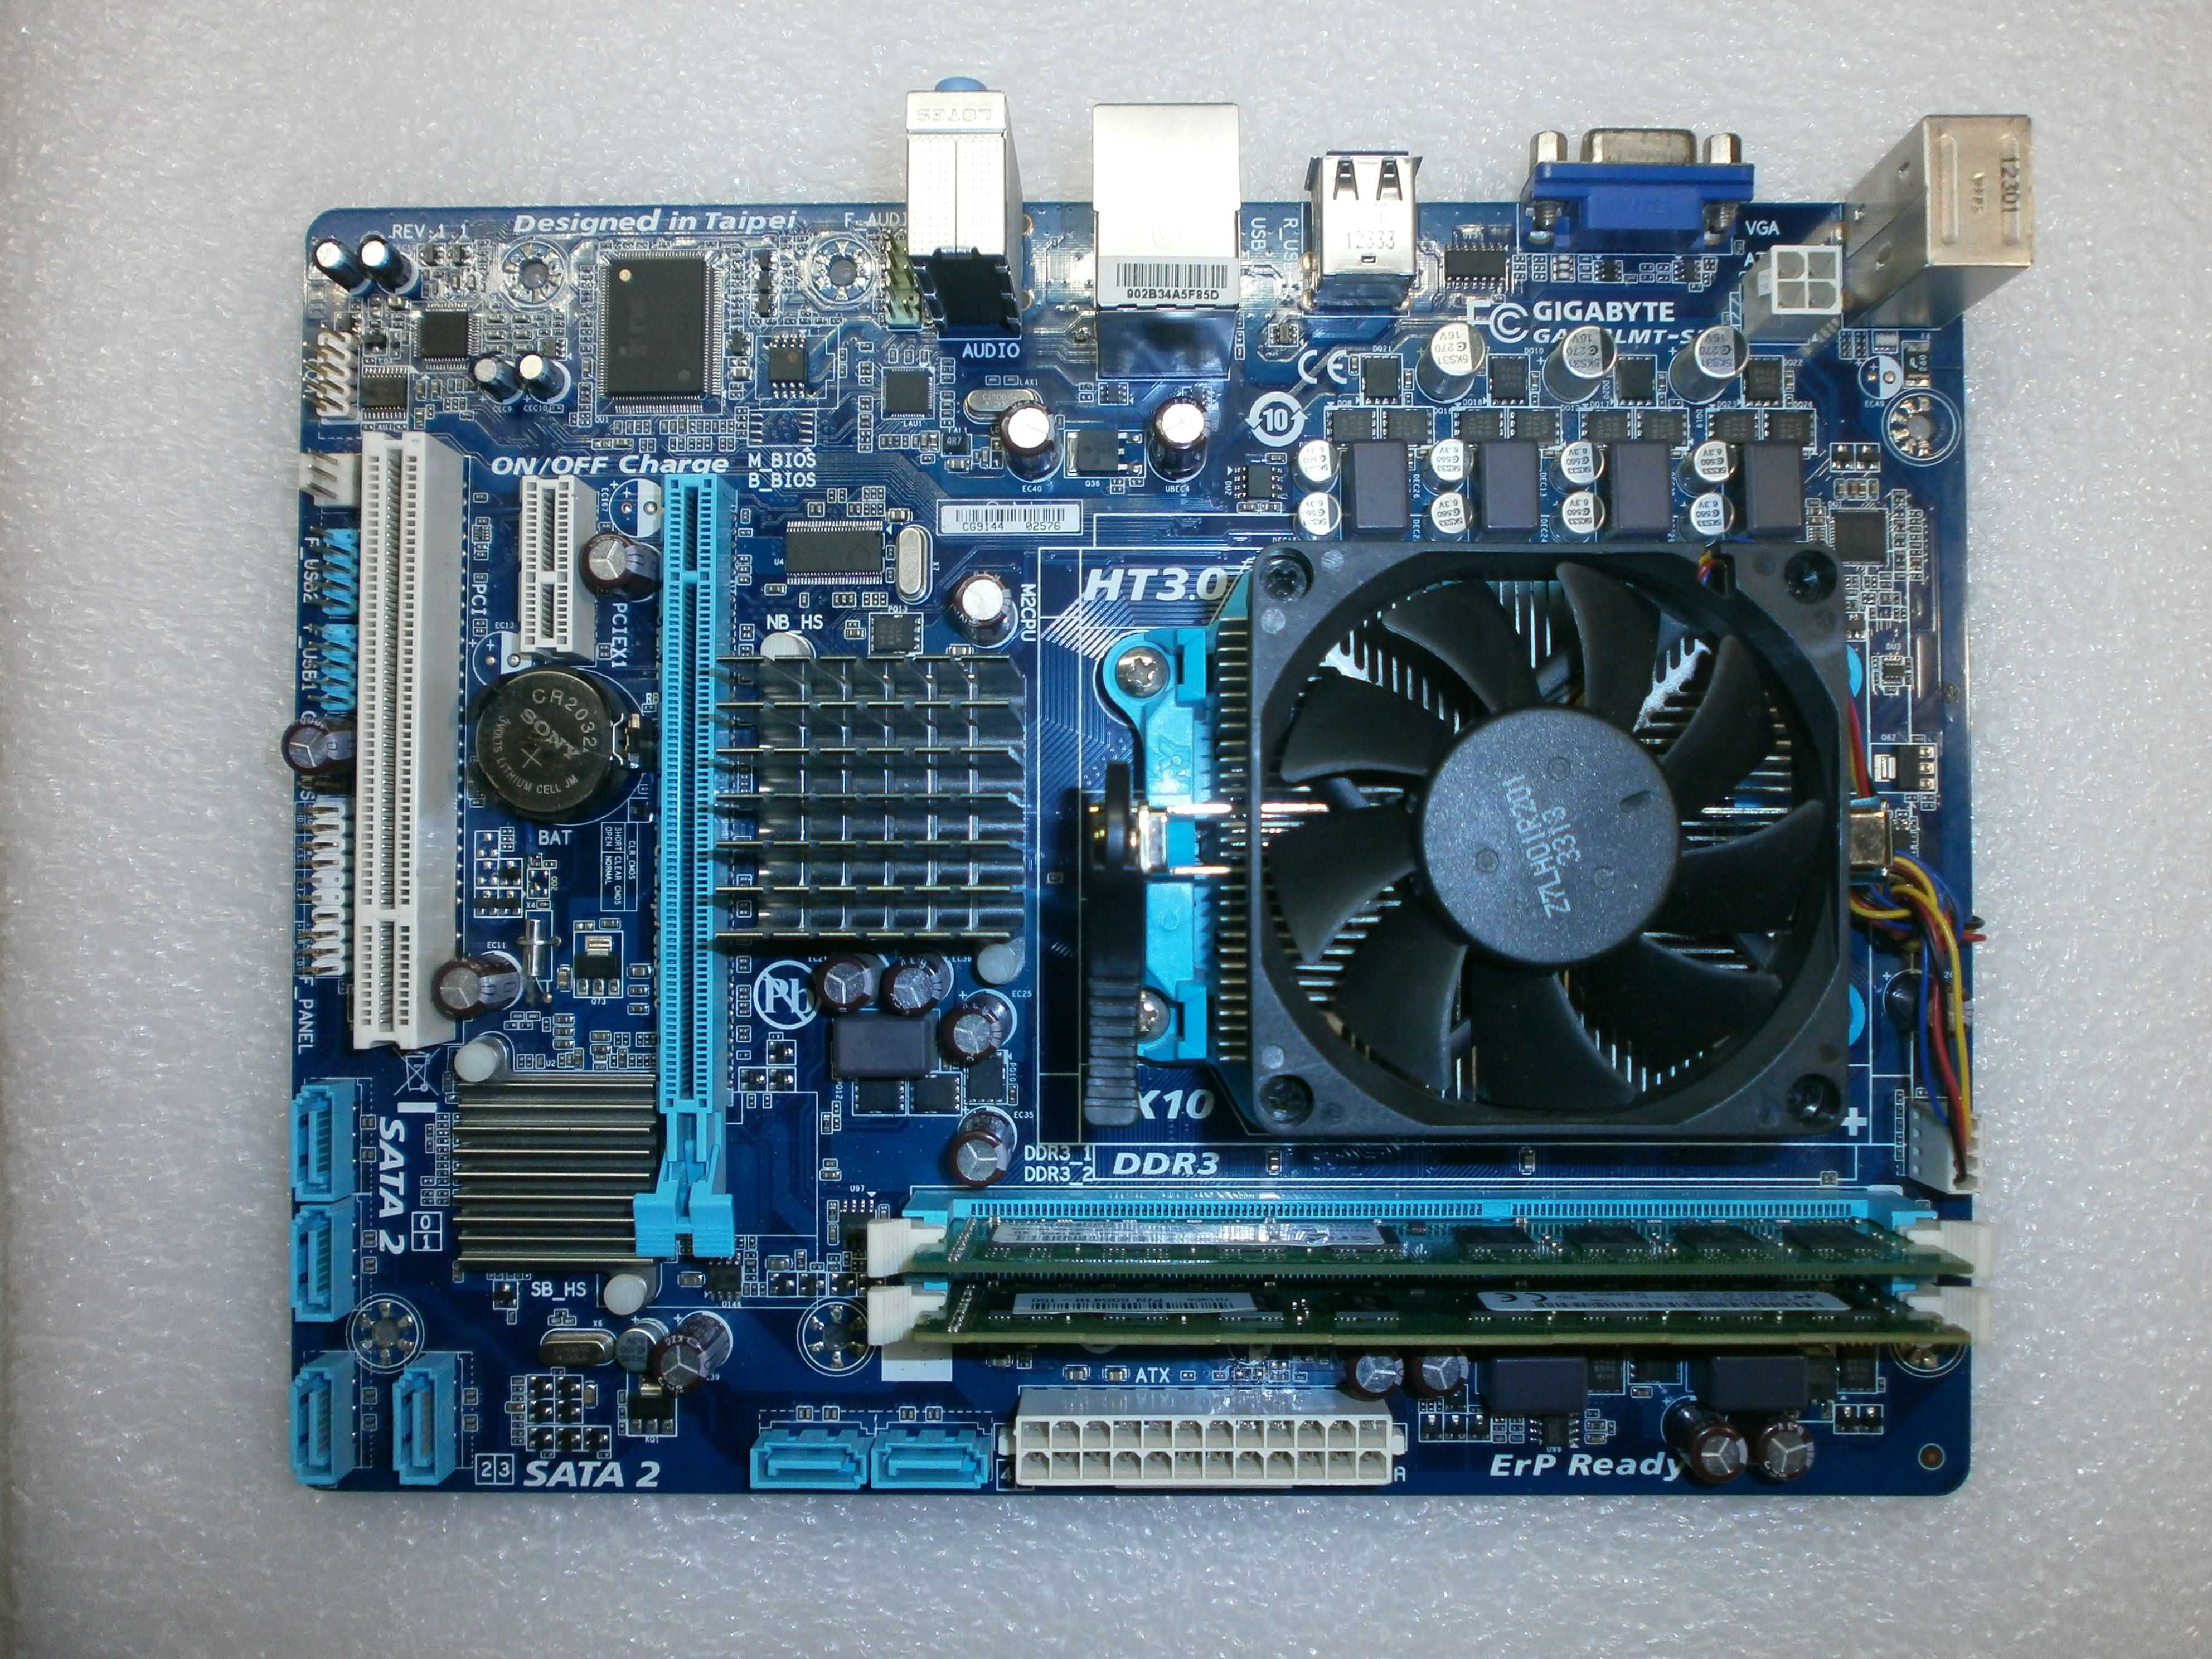 Комплект AM3+ GA-78LMT-S2 + Athlon X2 270+ cooler+ 8Gb DDR3